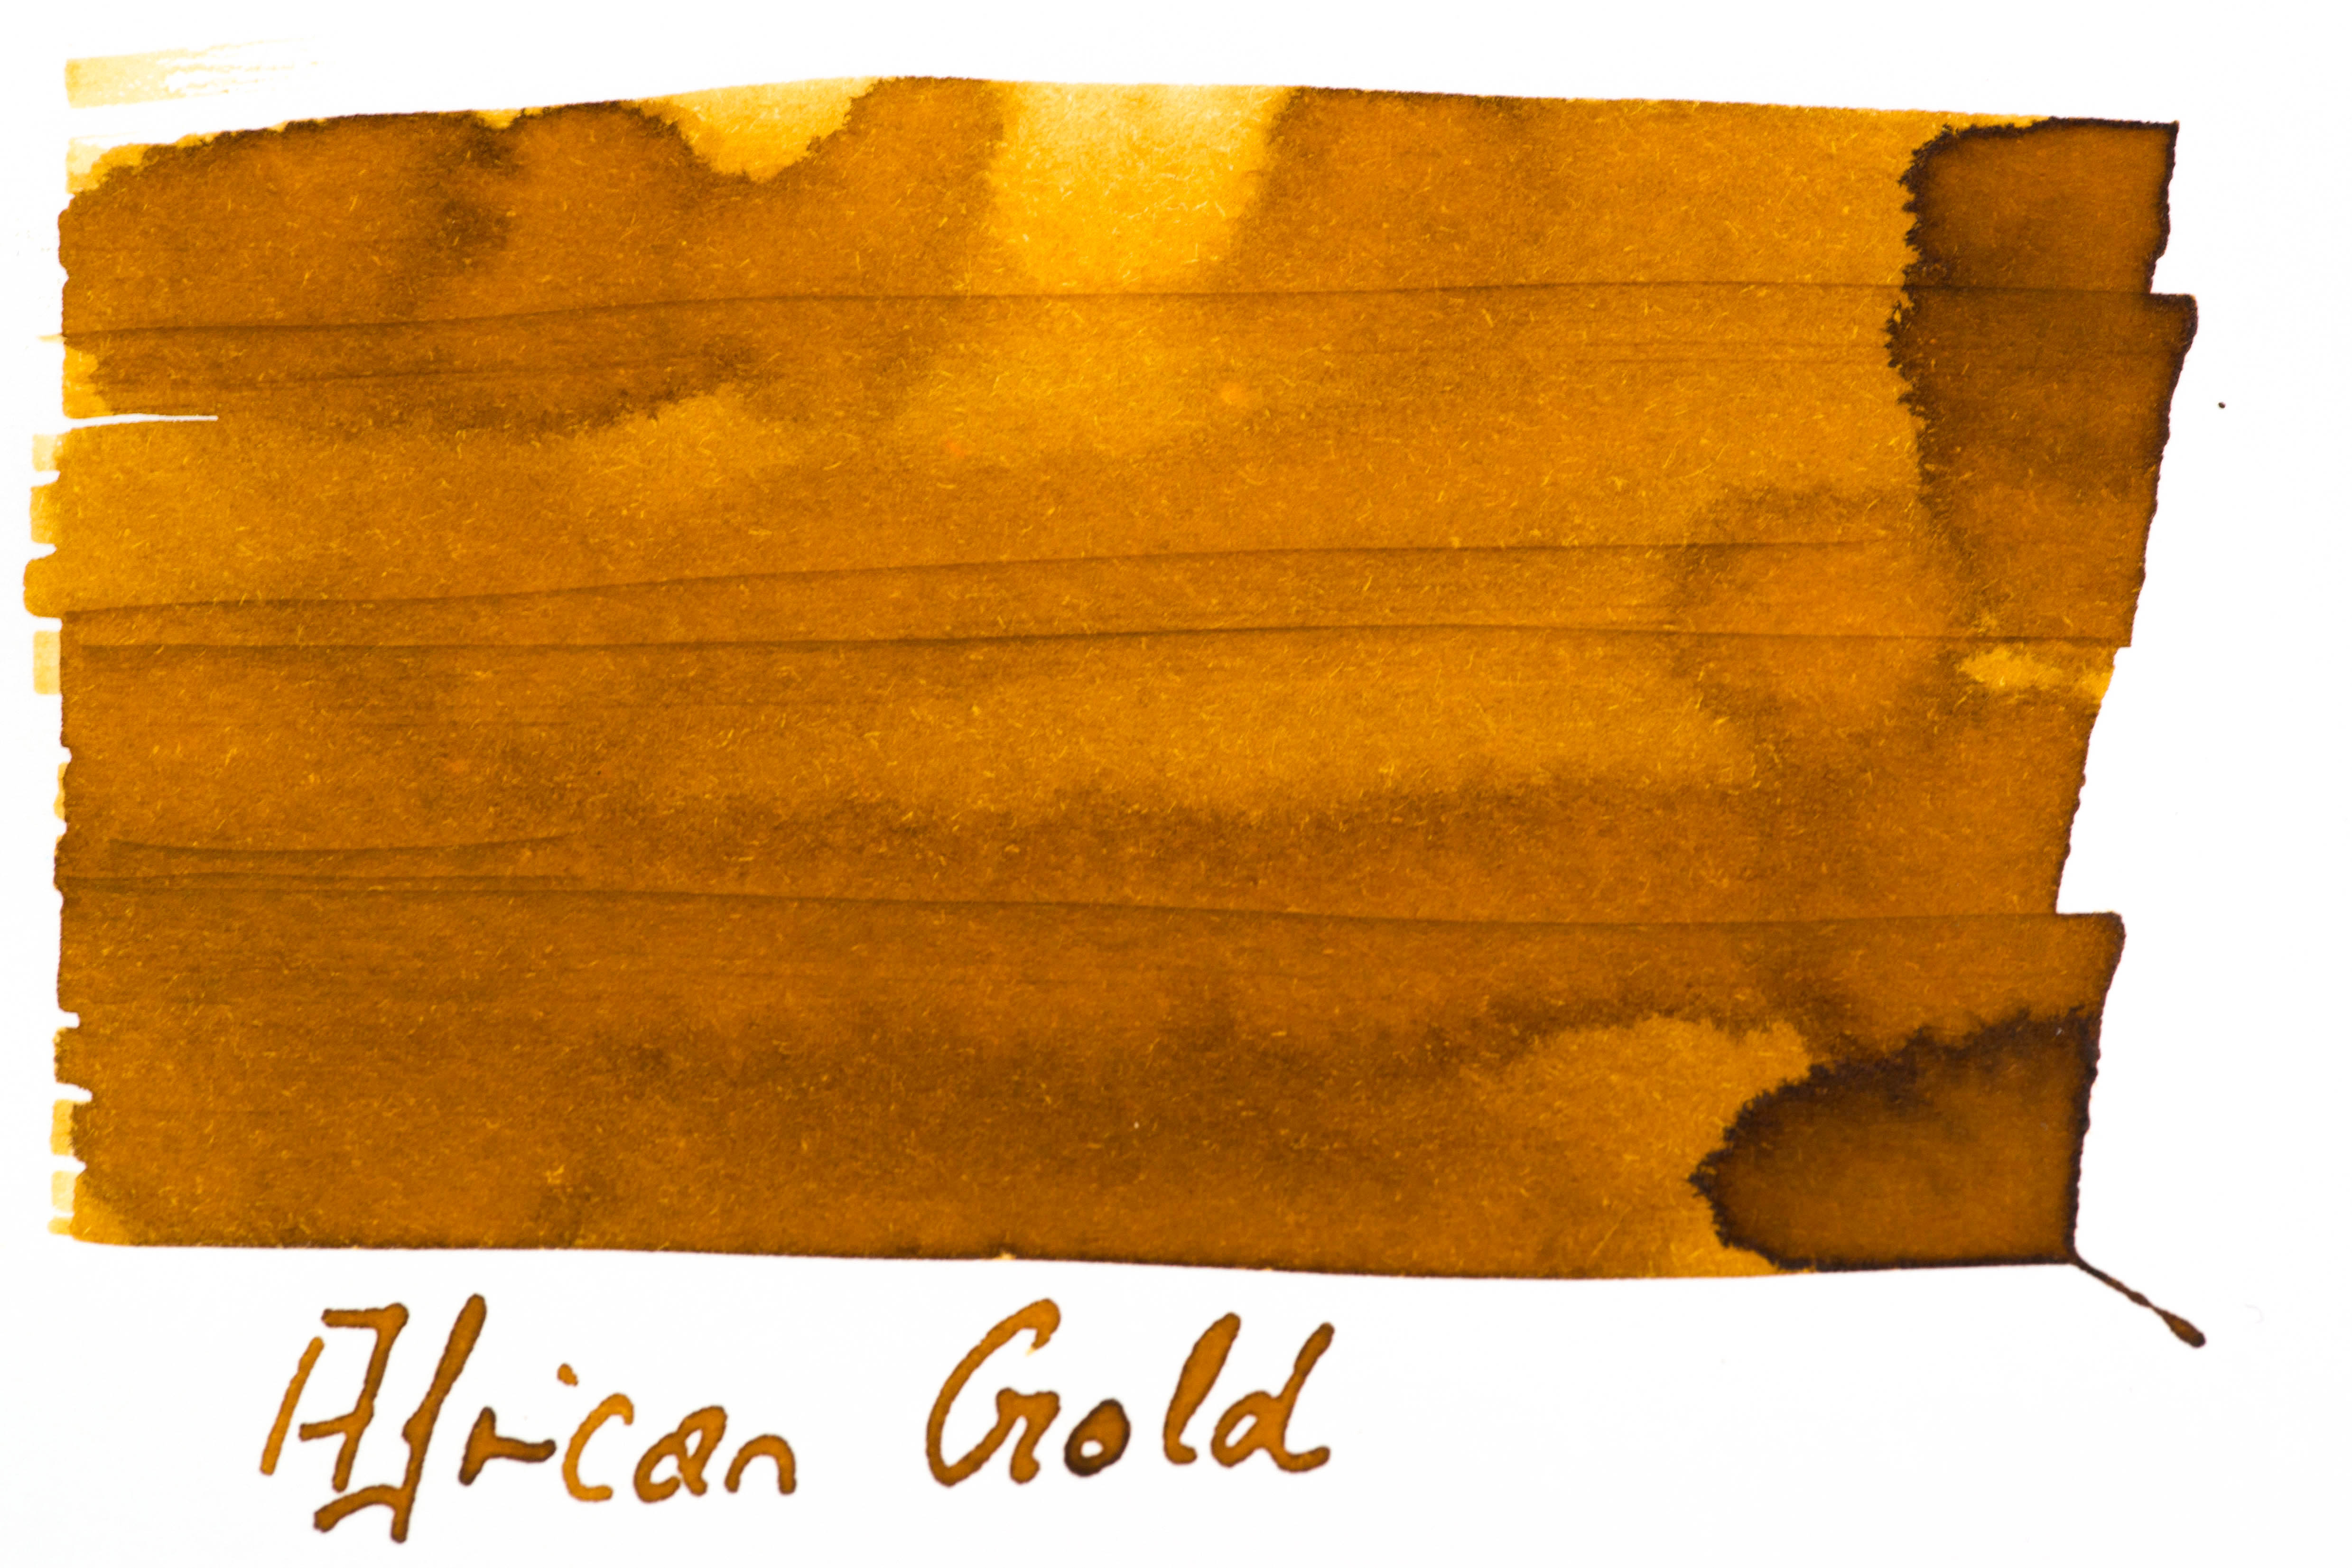 Robert Oster - African Gold